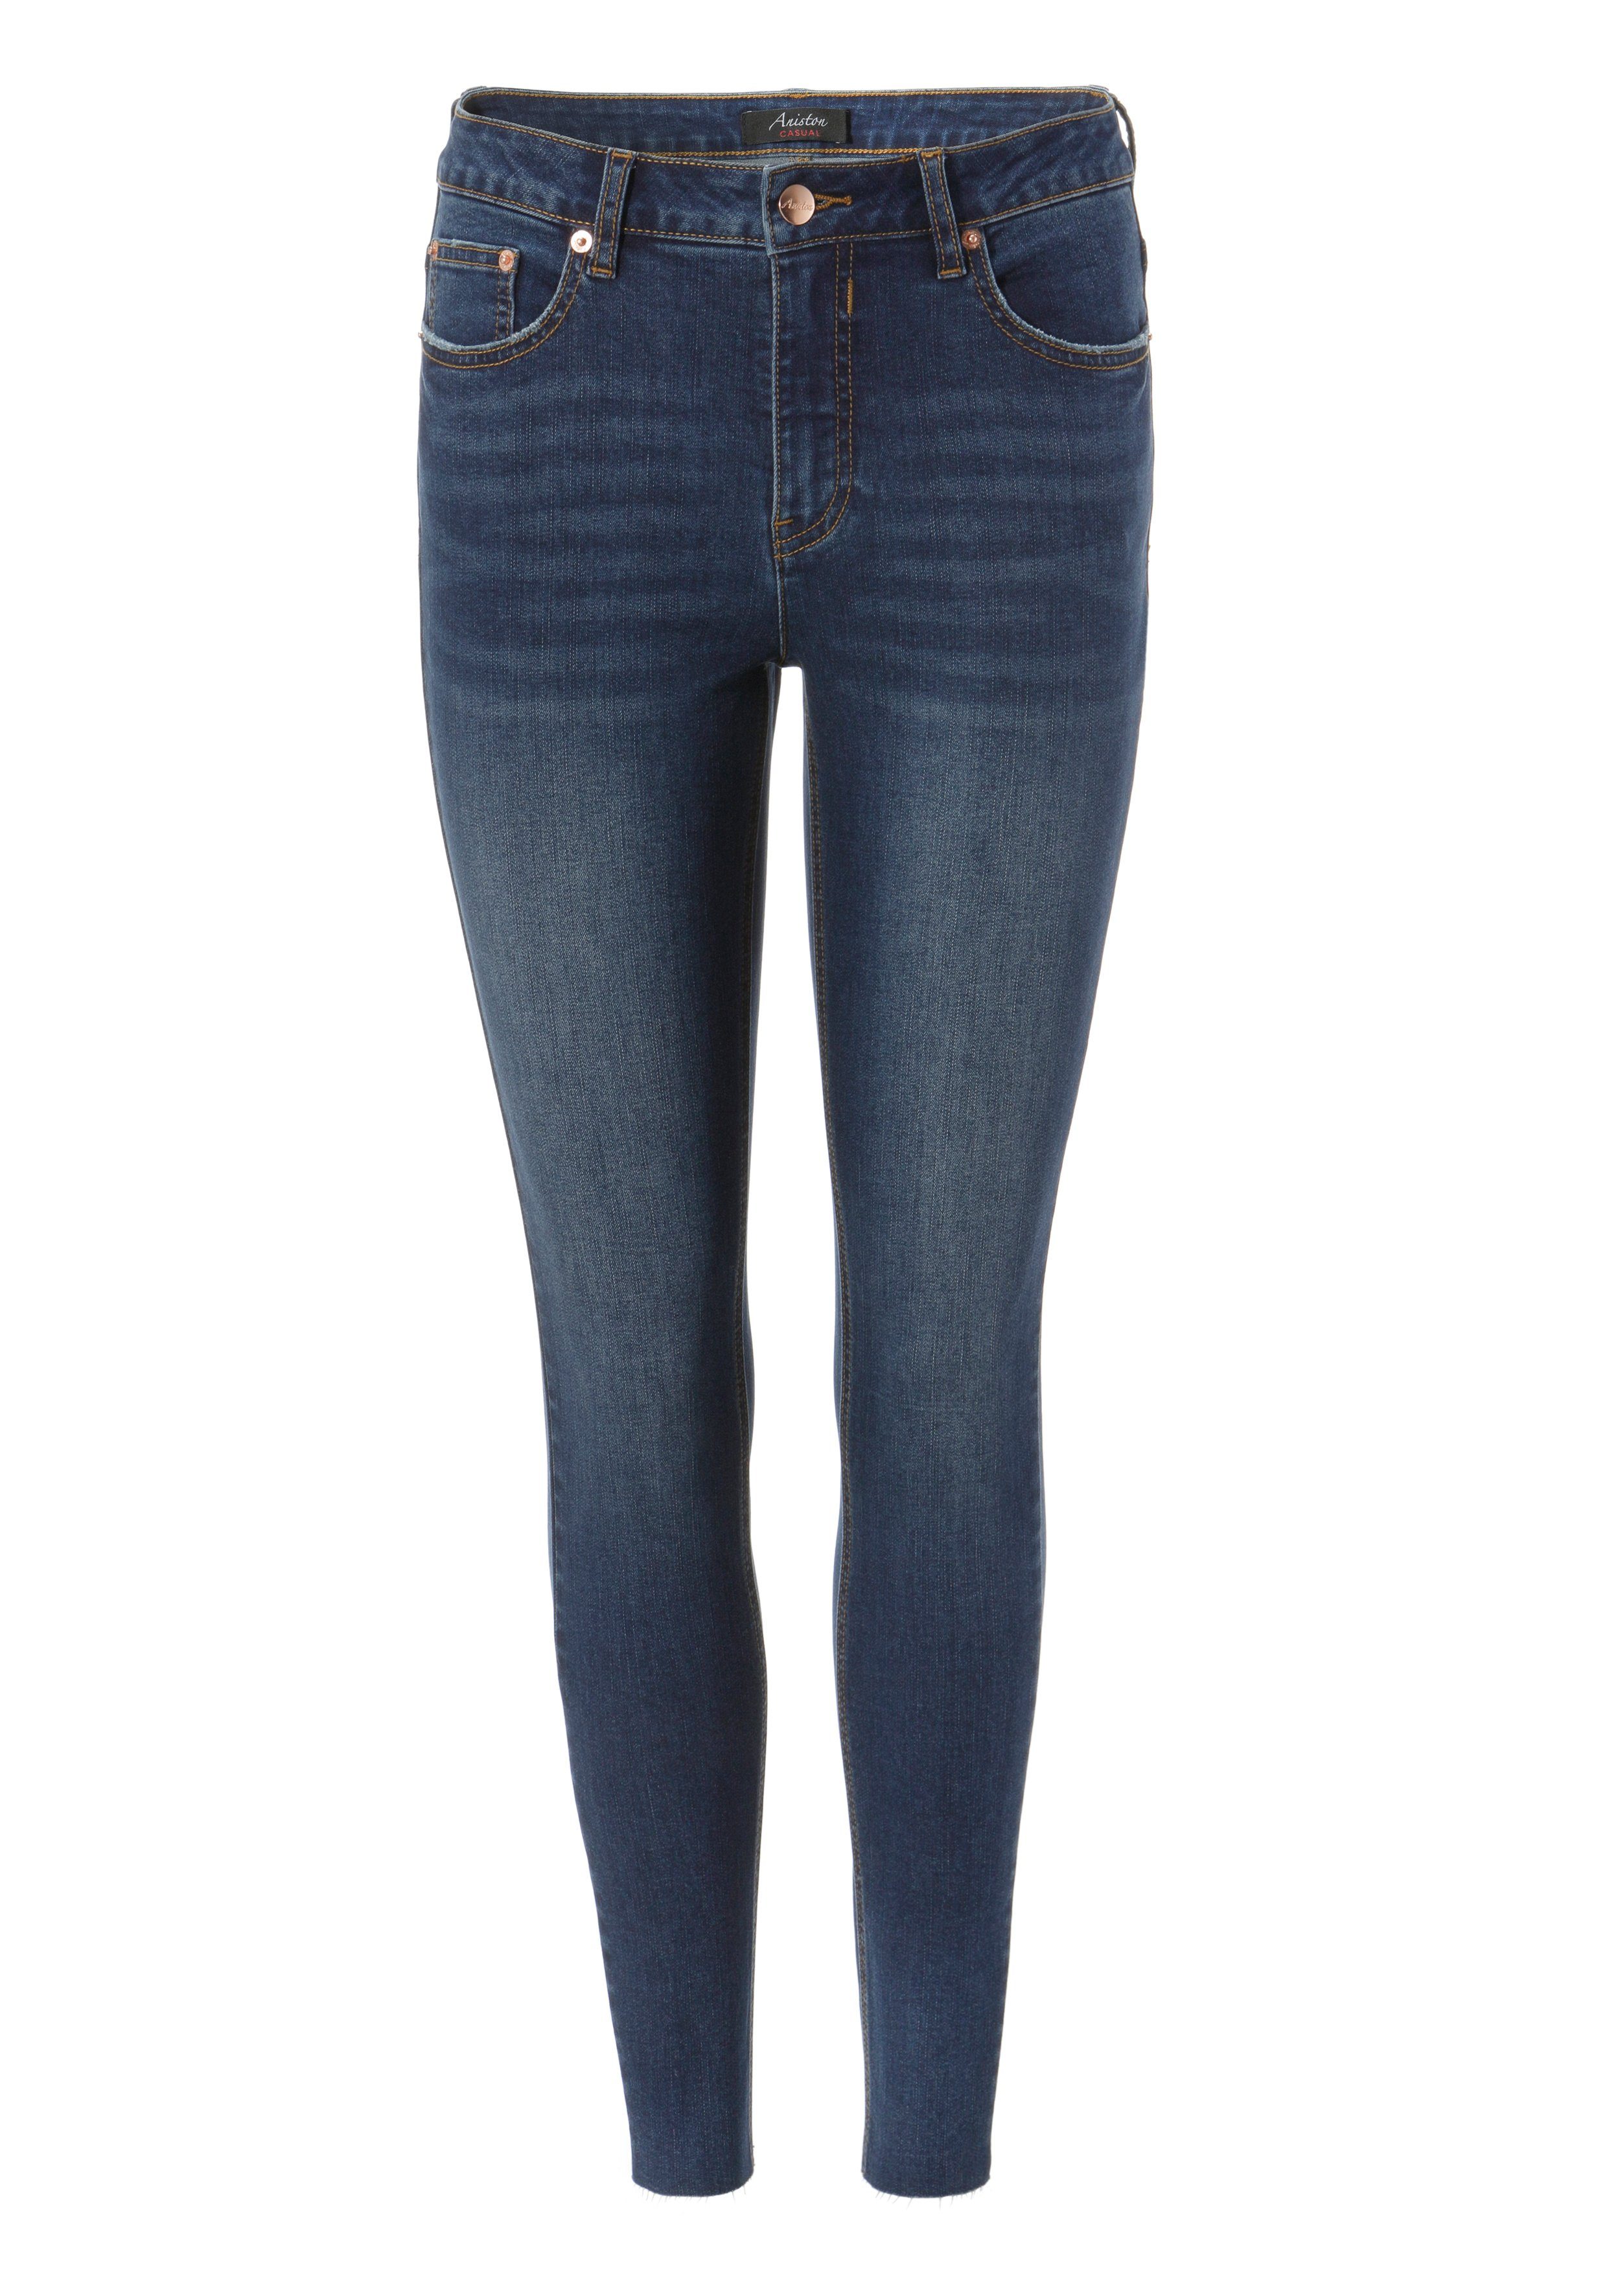 Aniston CASUAL Skinny-fit-Jeans waist - Beinabschluss mit ausgefransten regular darkblue